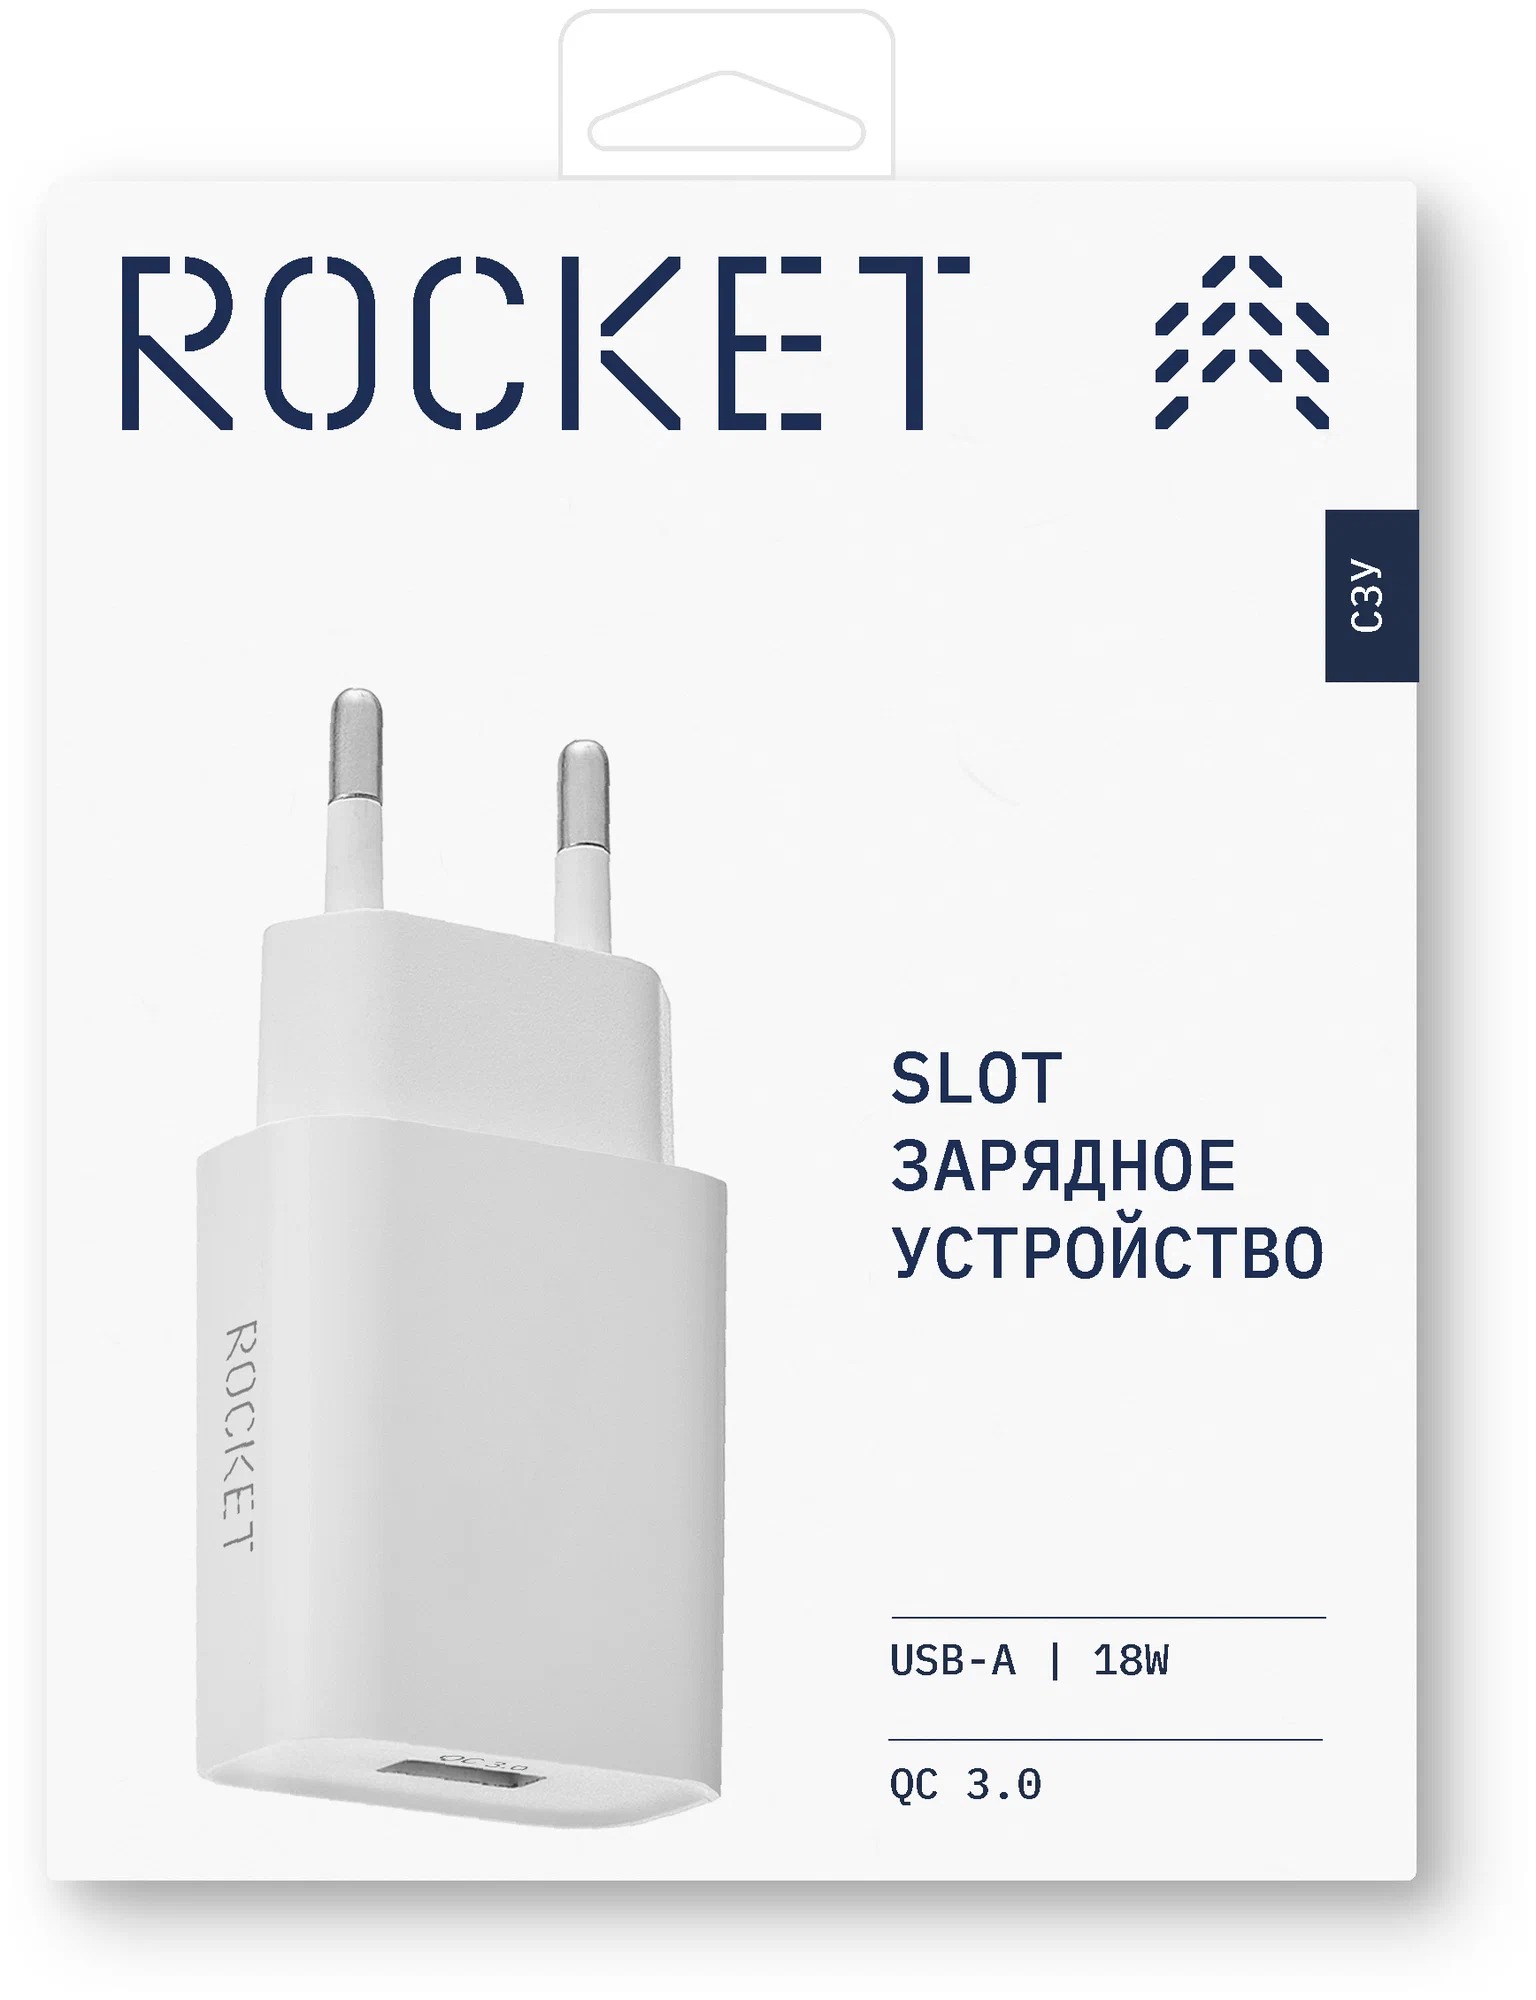 Сетевое зарядное устройство ROCKET Slot 18W, USB-A, белый